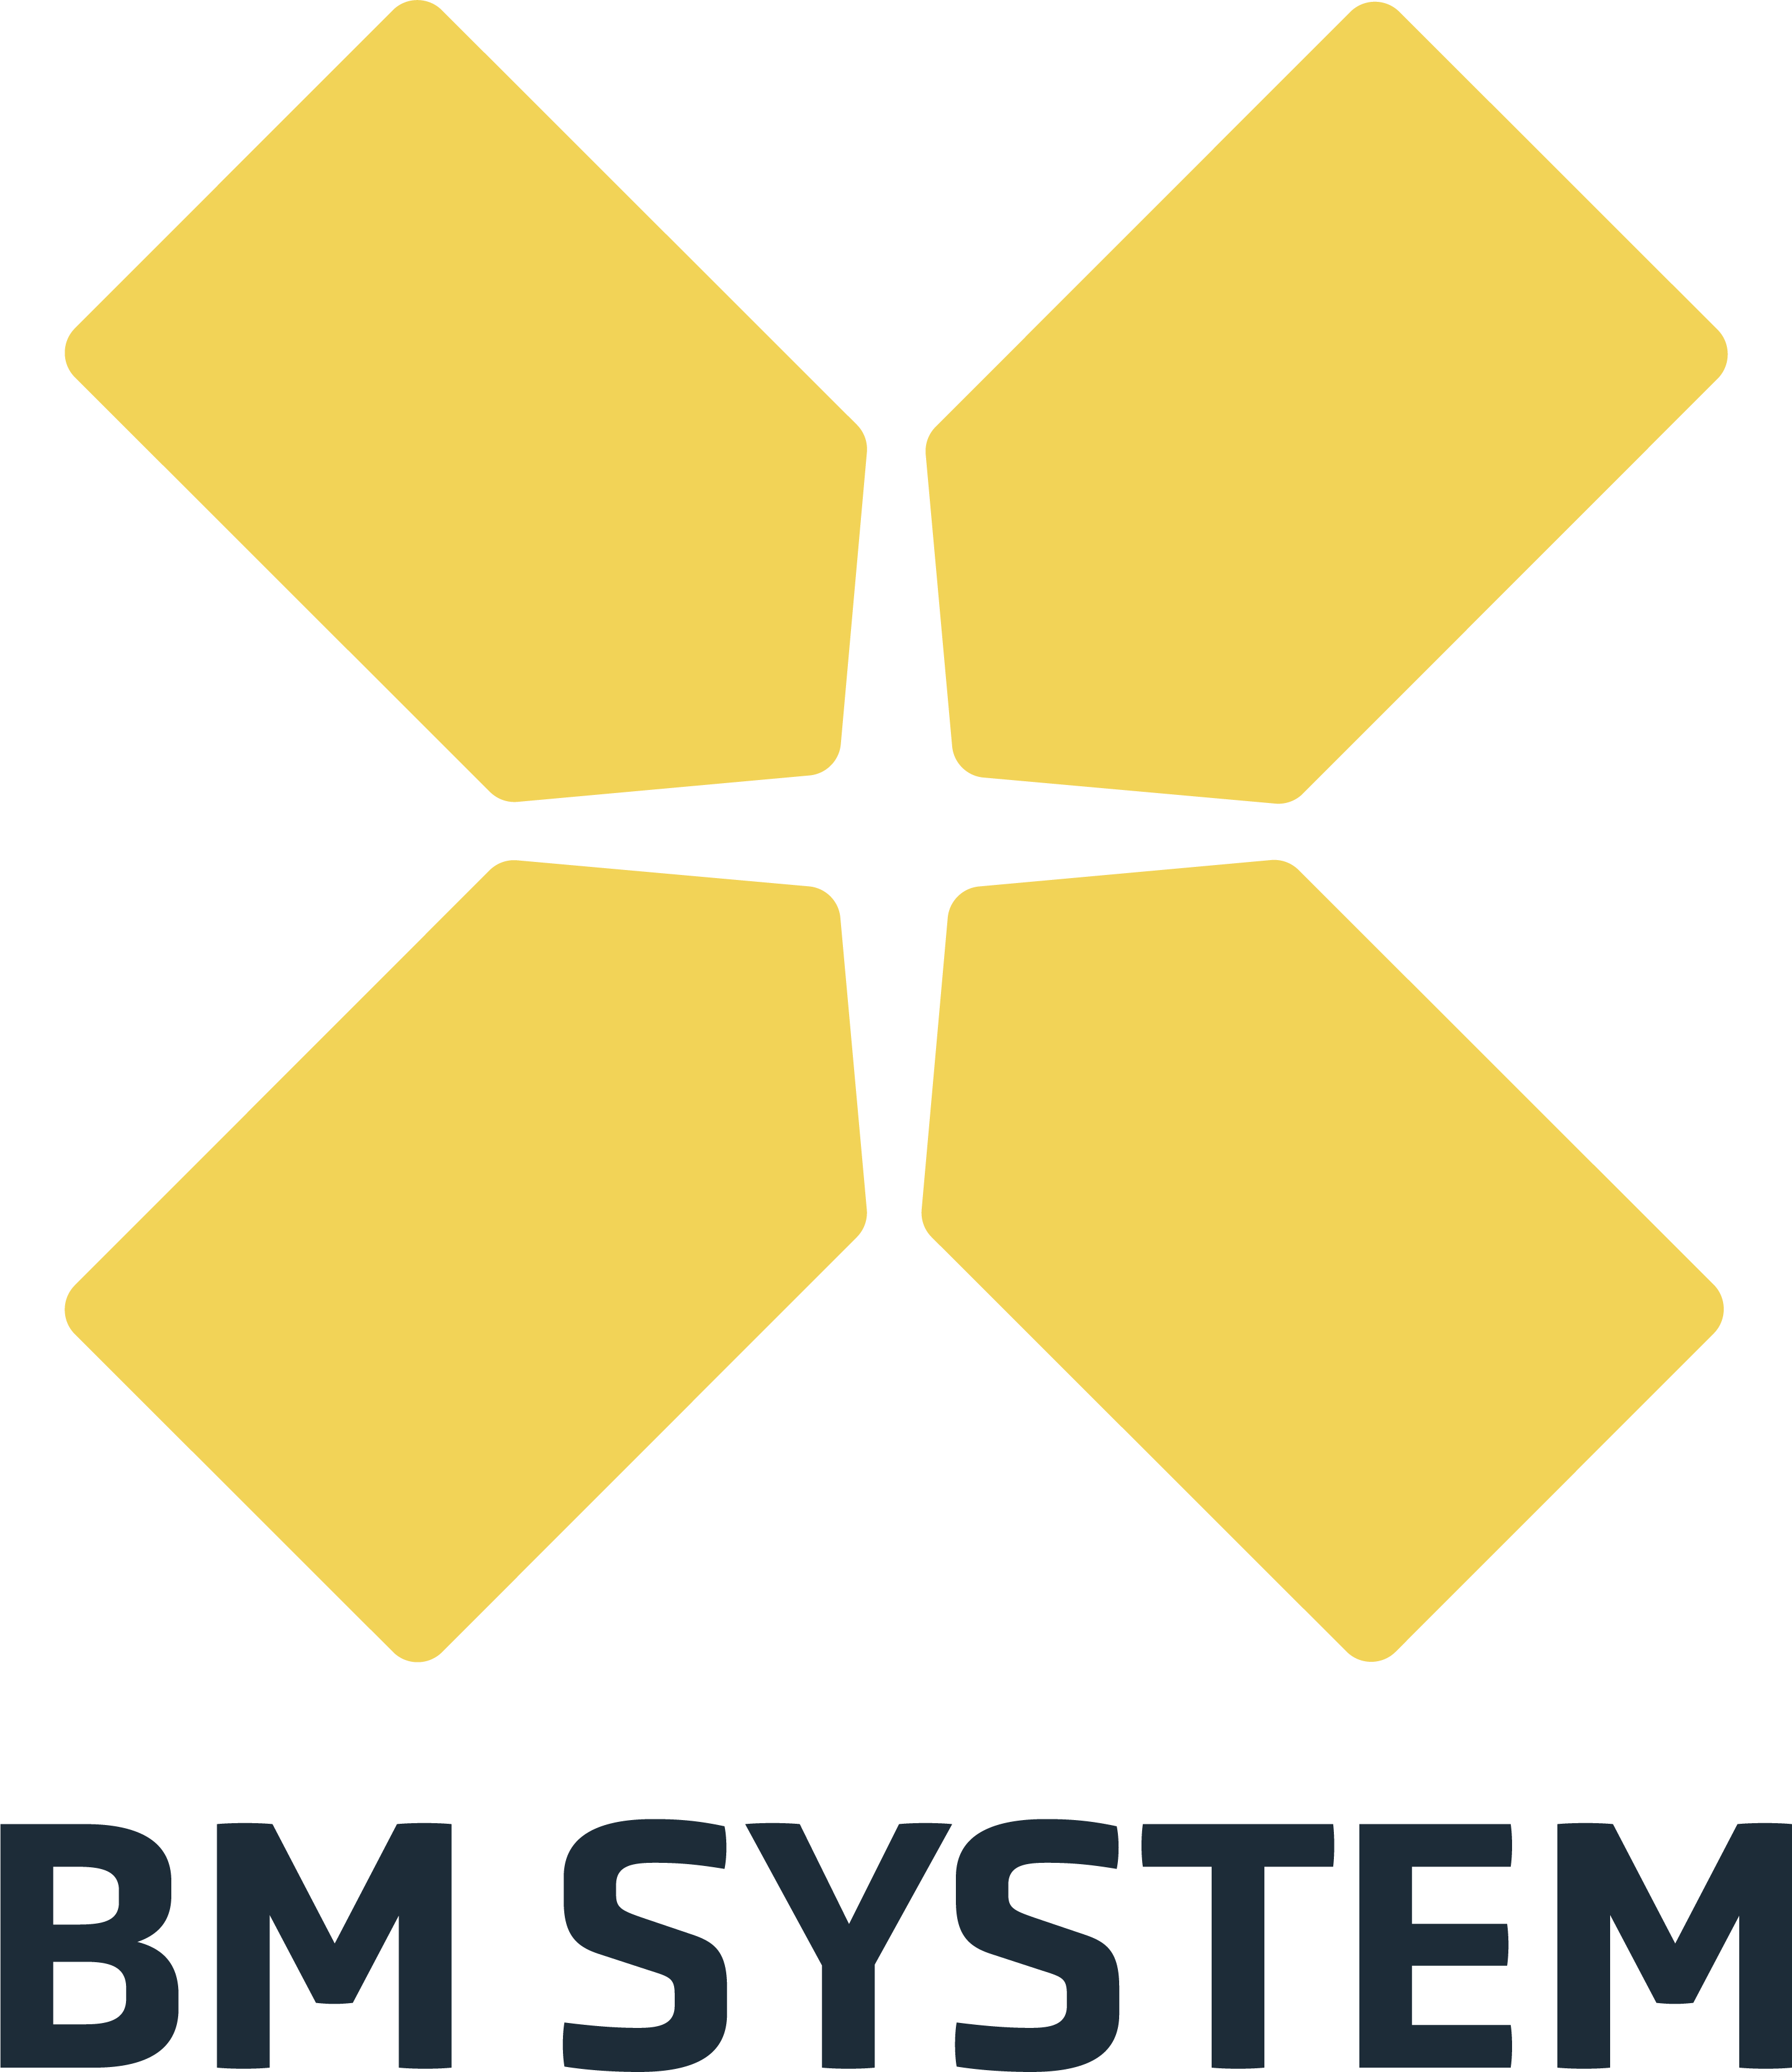 BM System logo